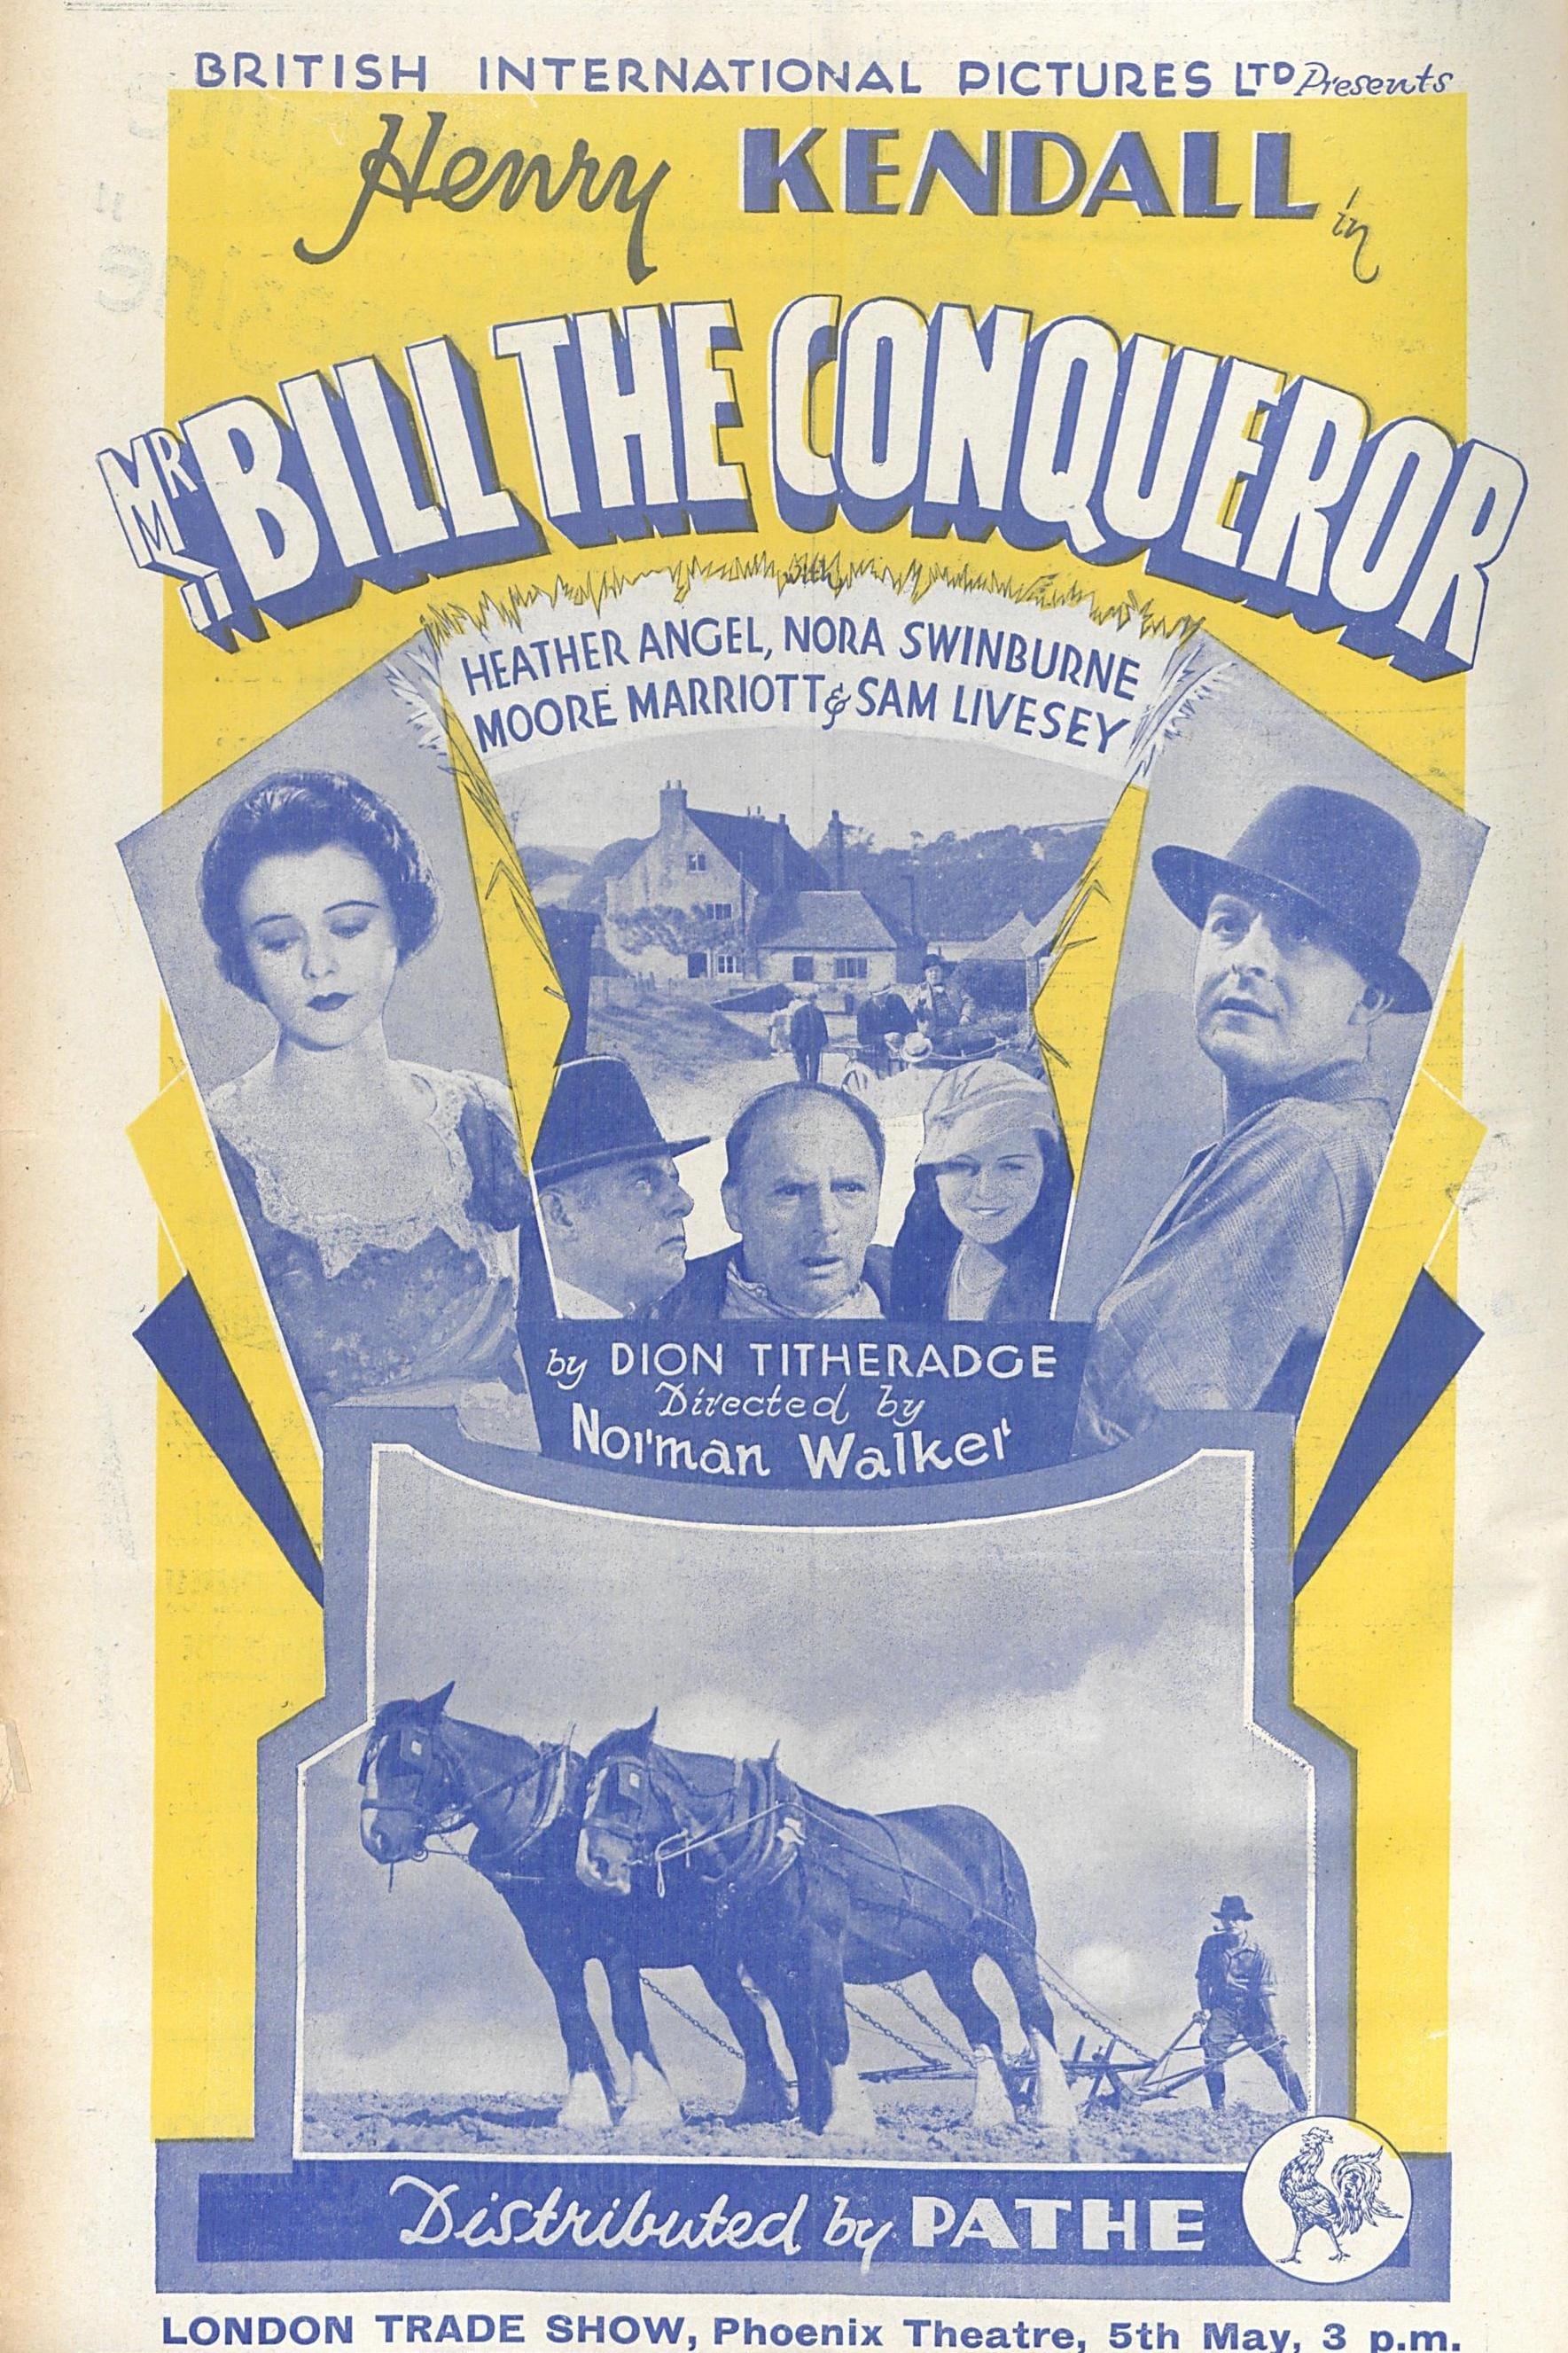 Mr. Bill the Conqueror poster